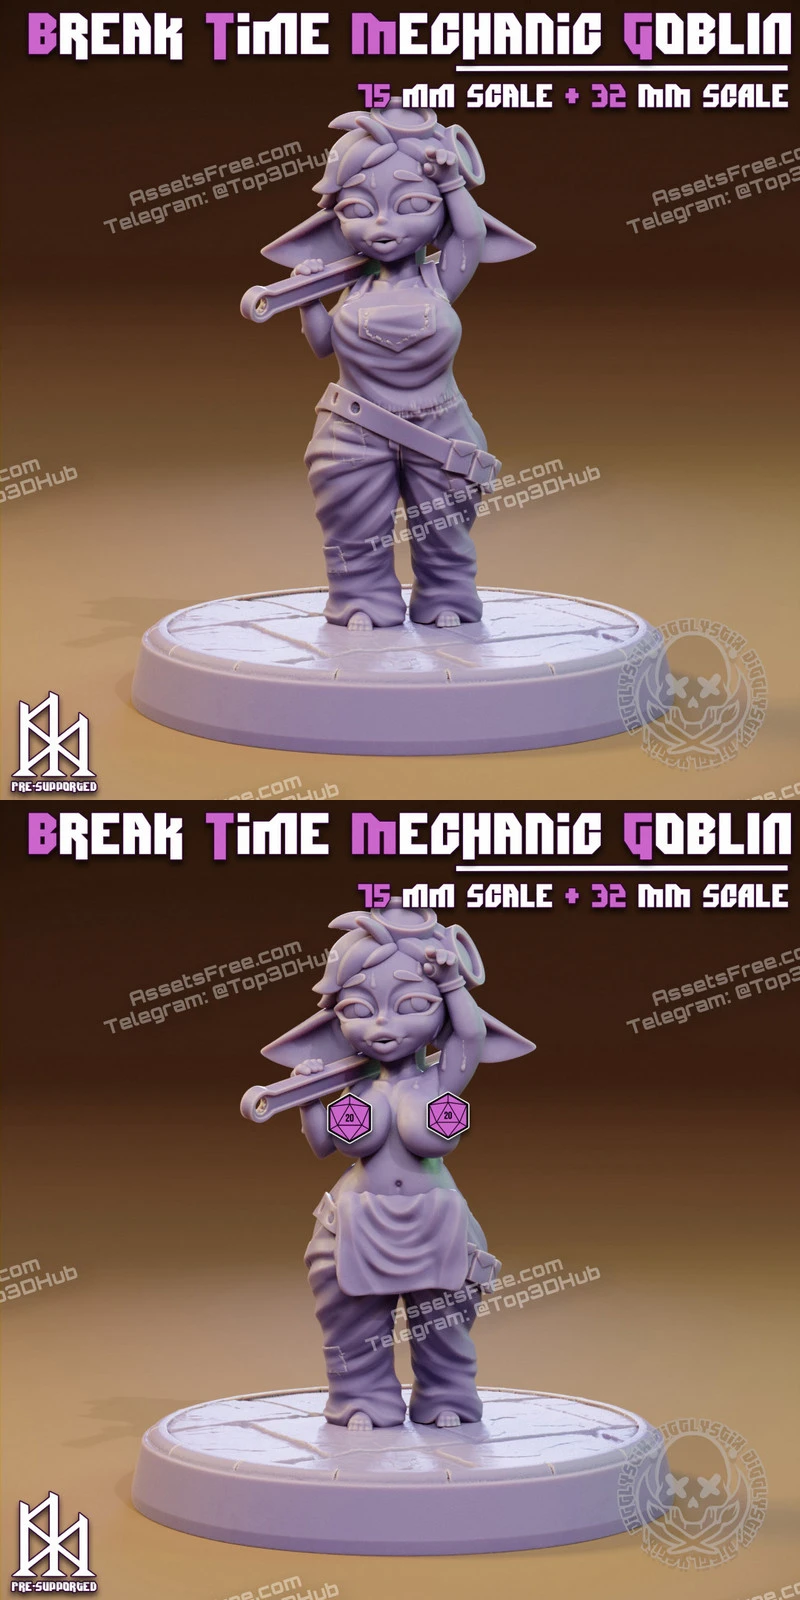 Break Time Mechanic Goblin